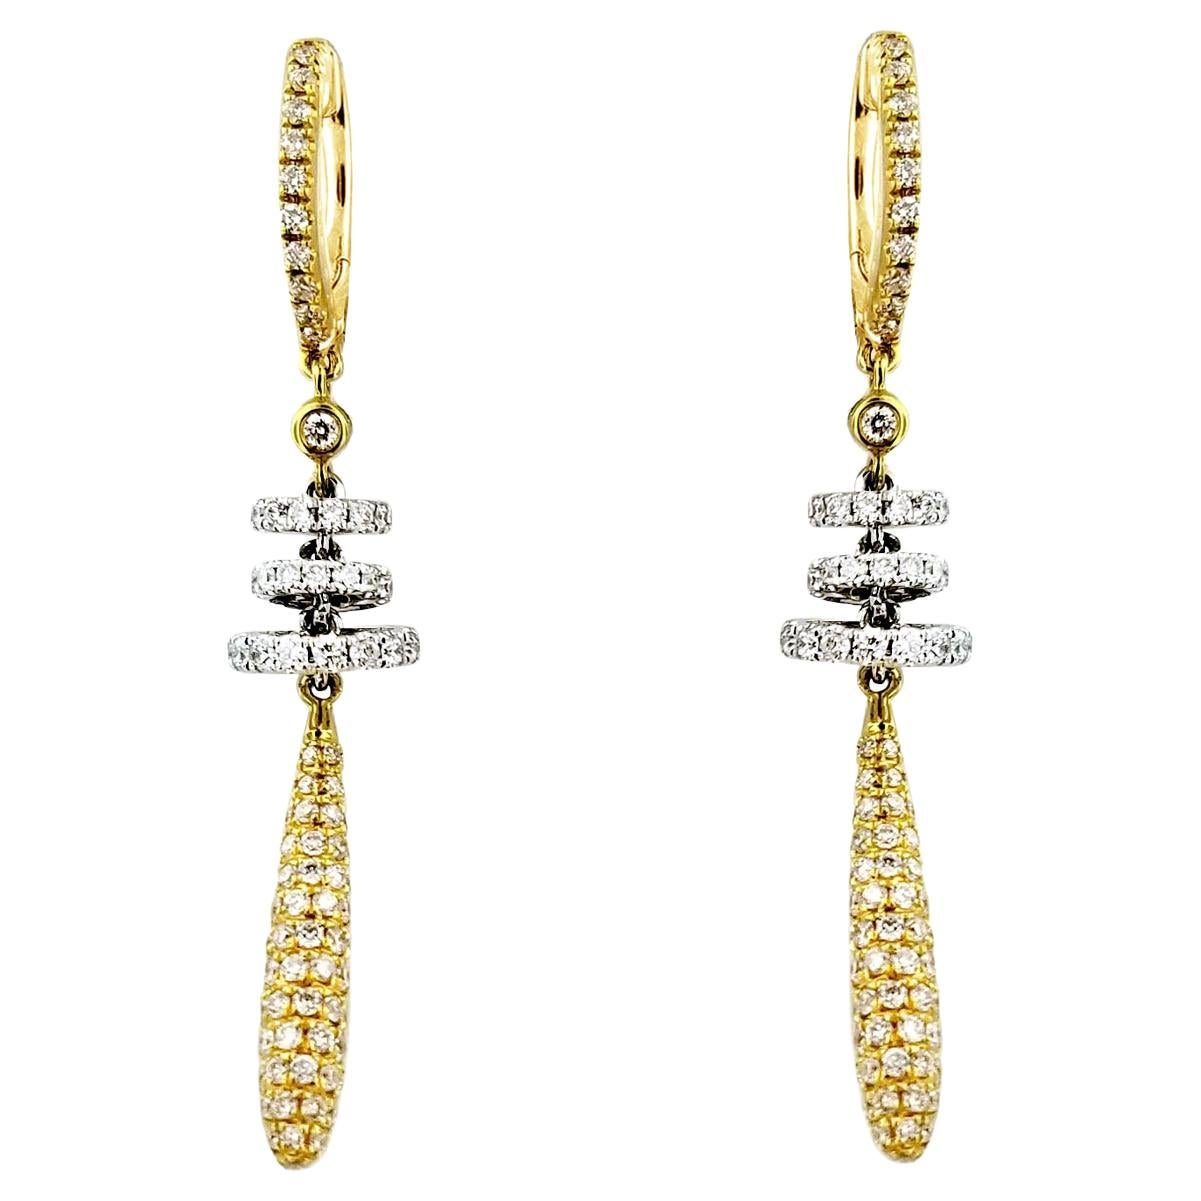 Boucles d'oreilles pendantes en or 18 carats avec diamants en forme de rondelles